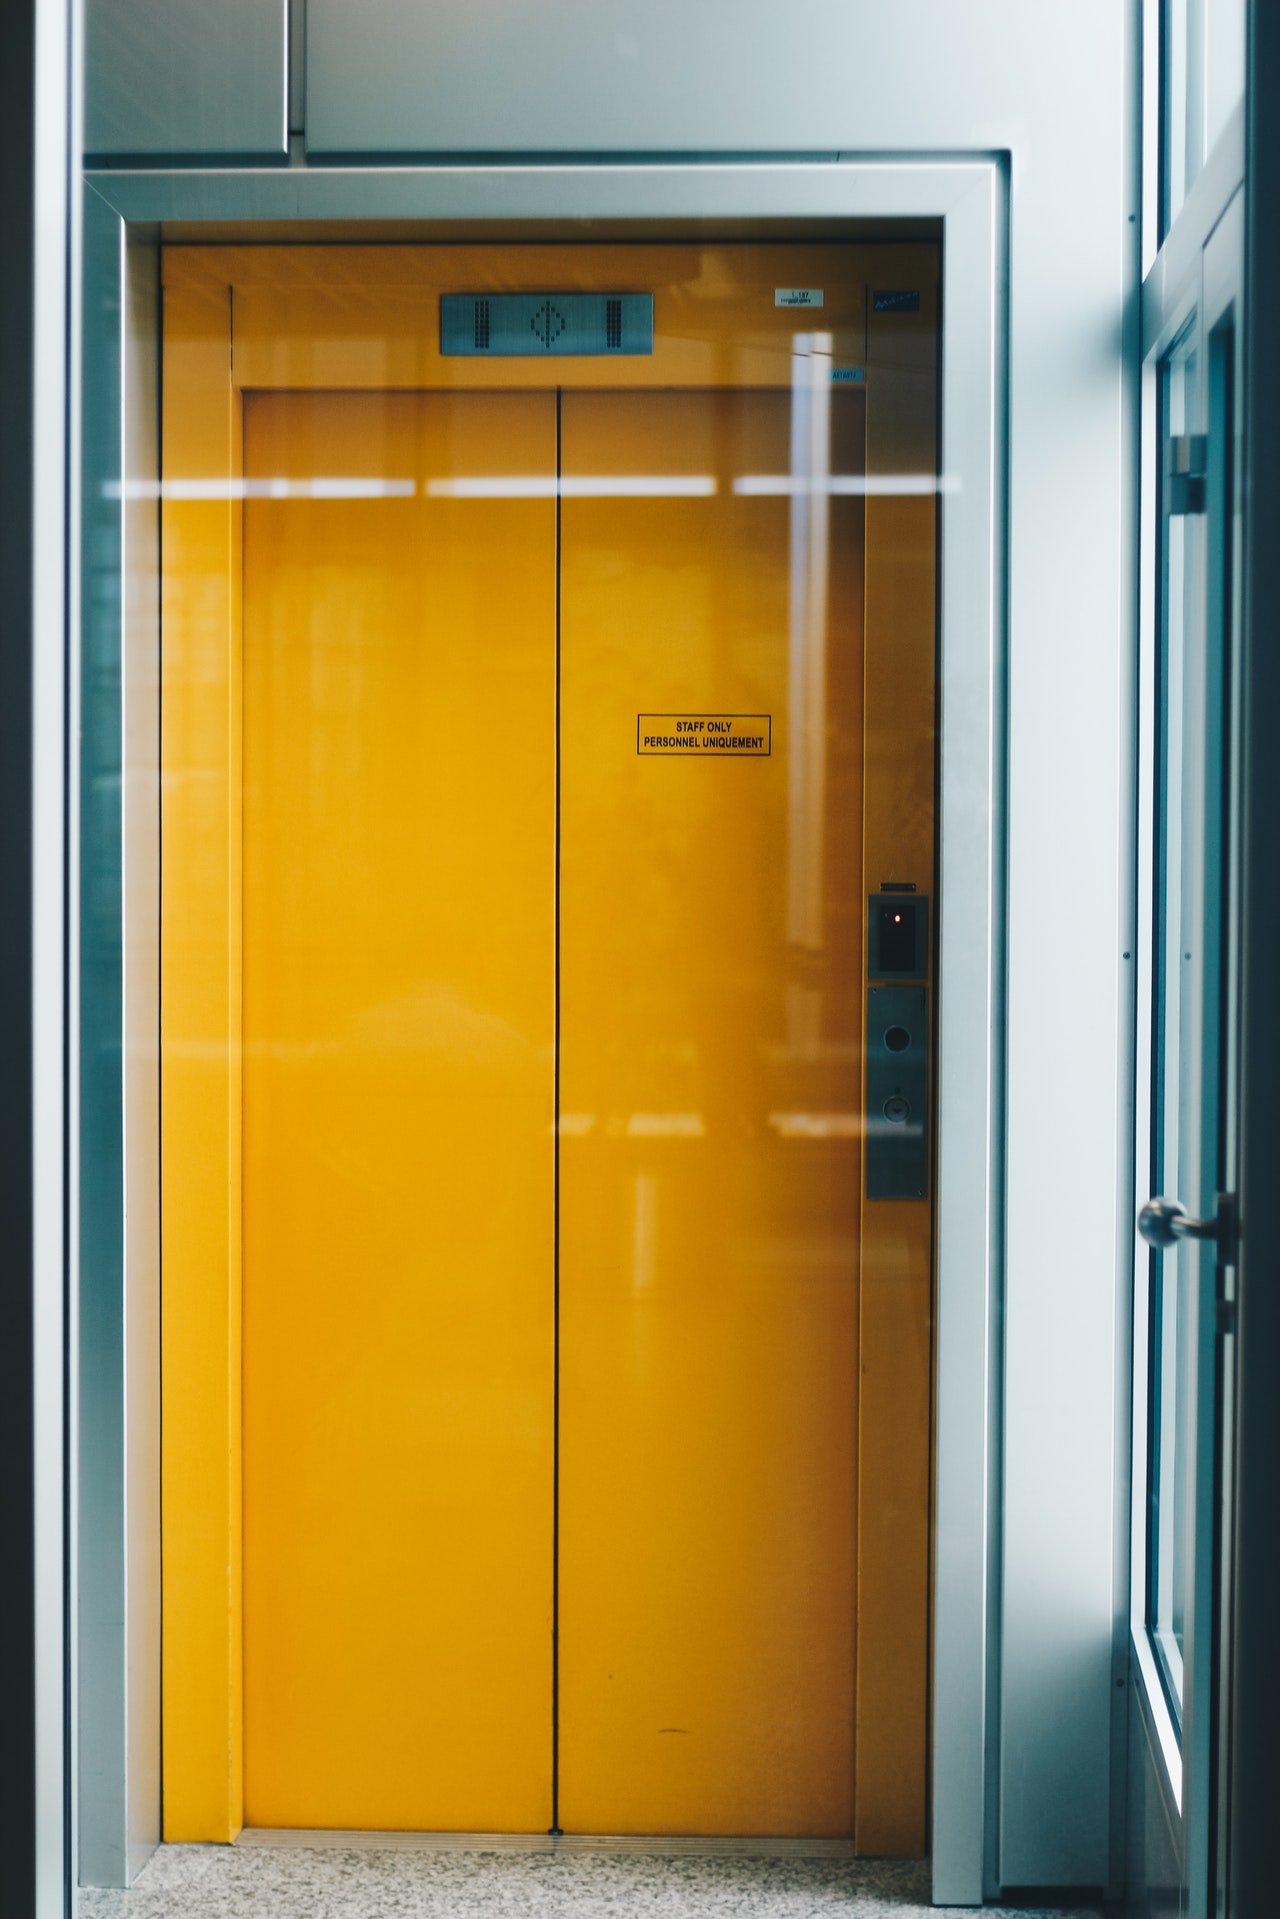 Photo of a yellow elevator door | Photo: Pexels